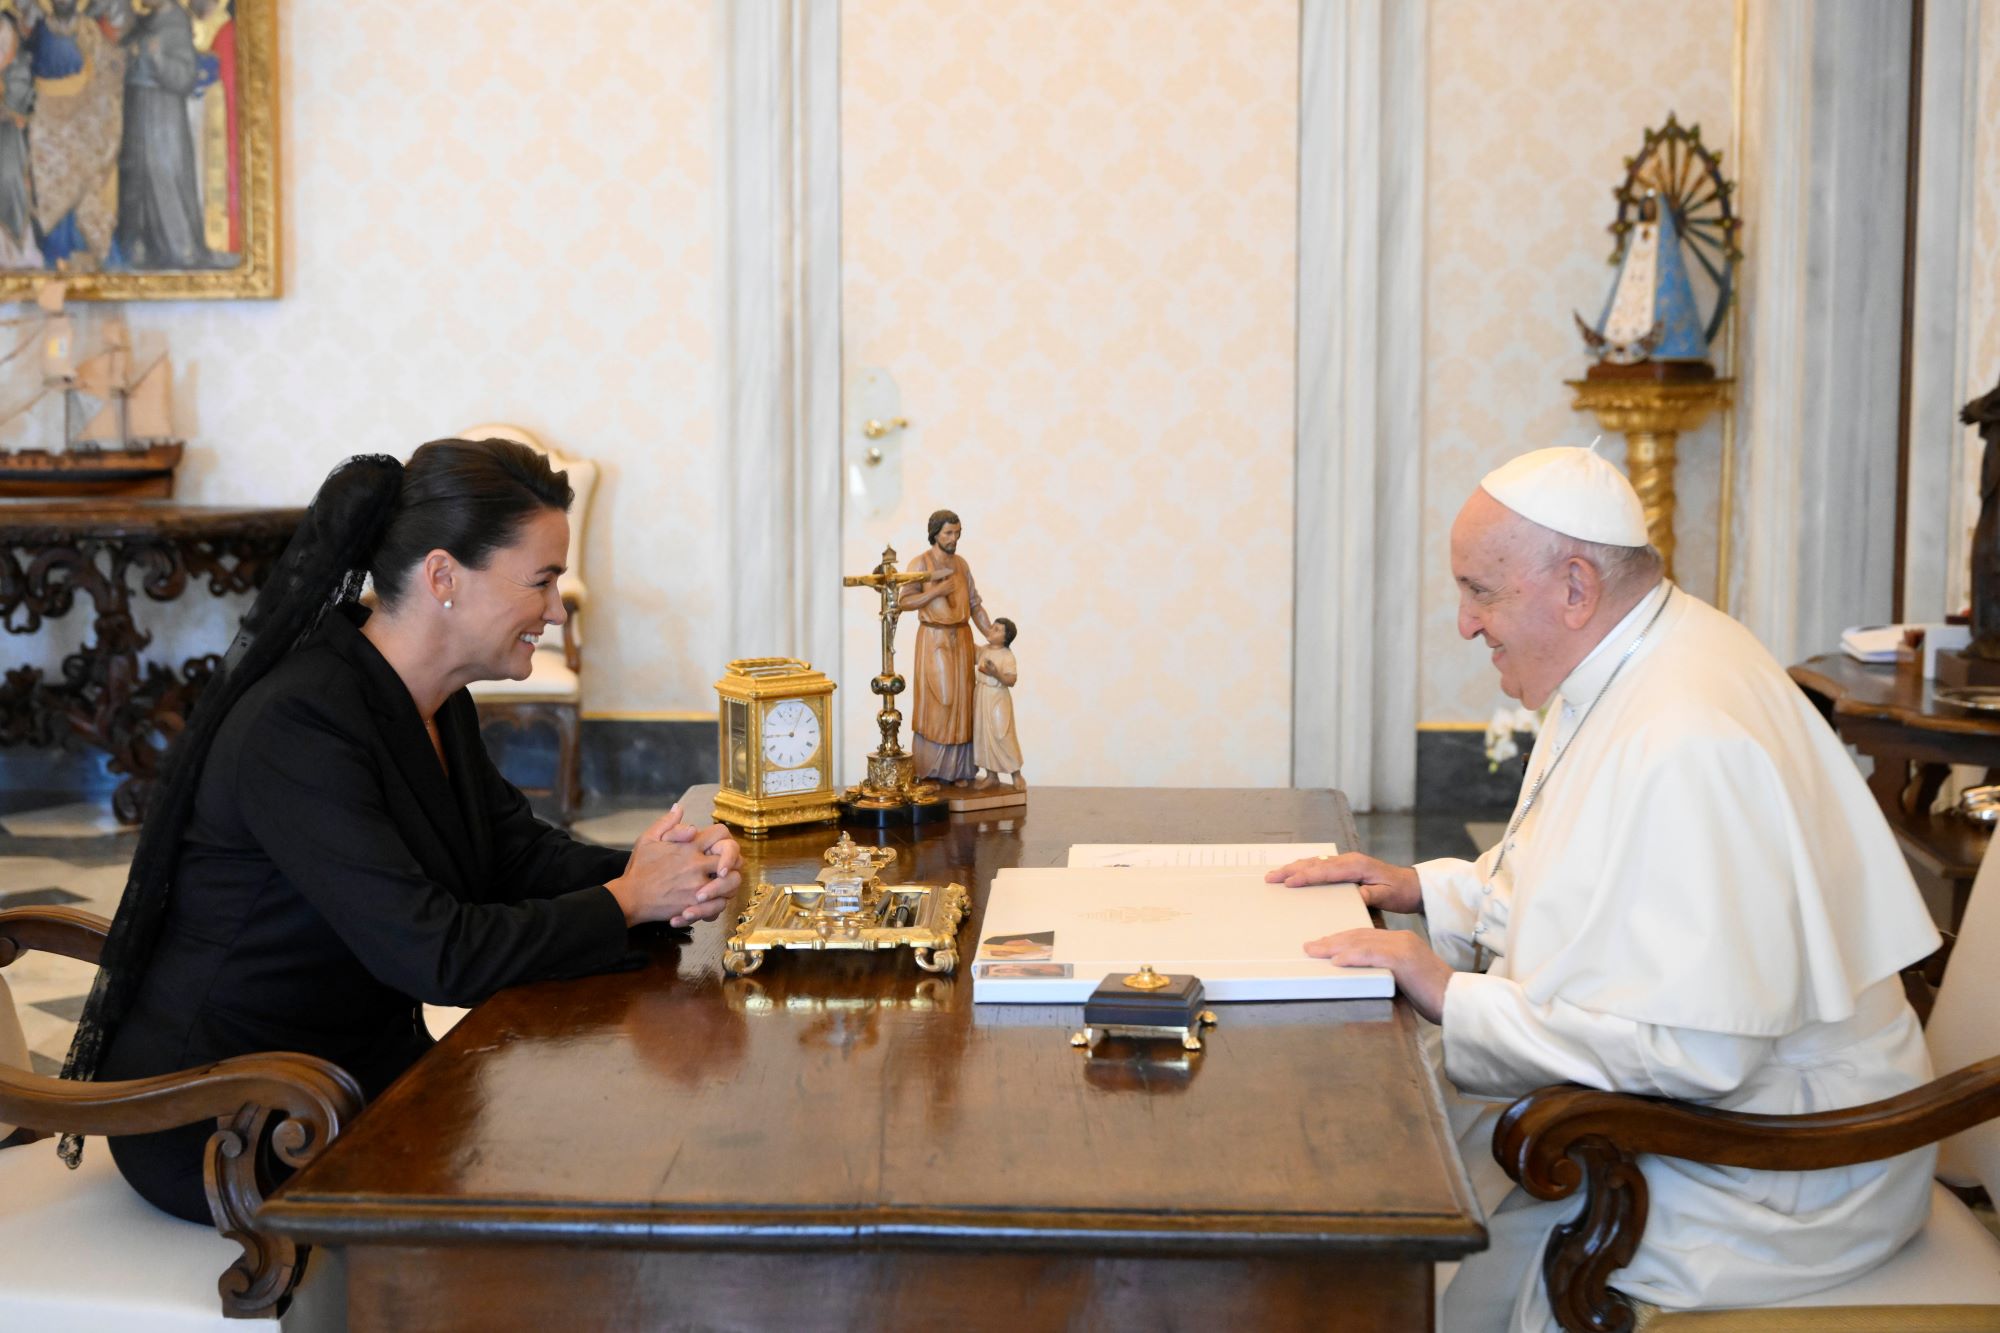 Novák Katalin pápai audiencián a Vatikánban